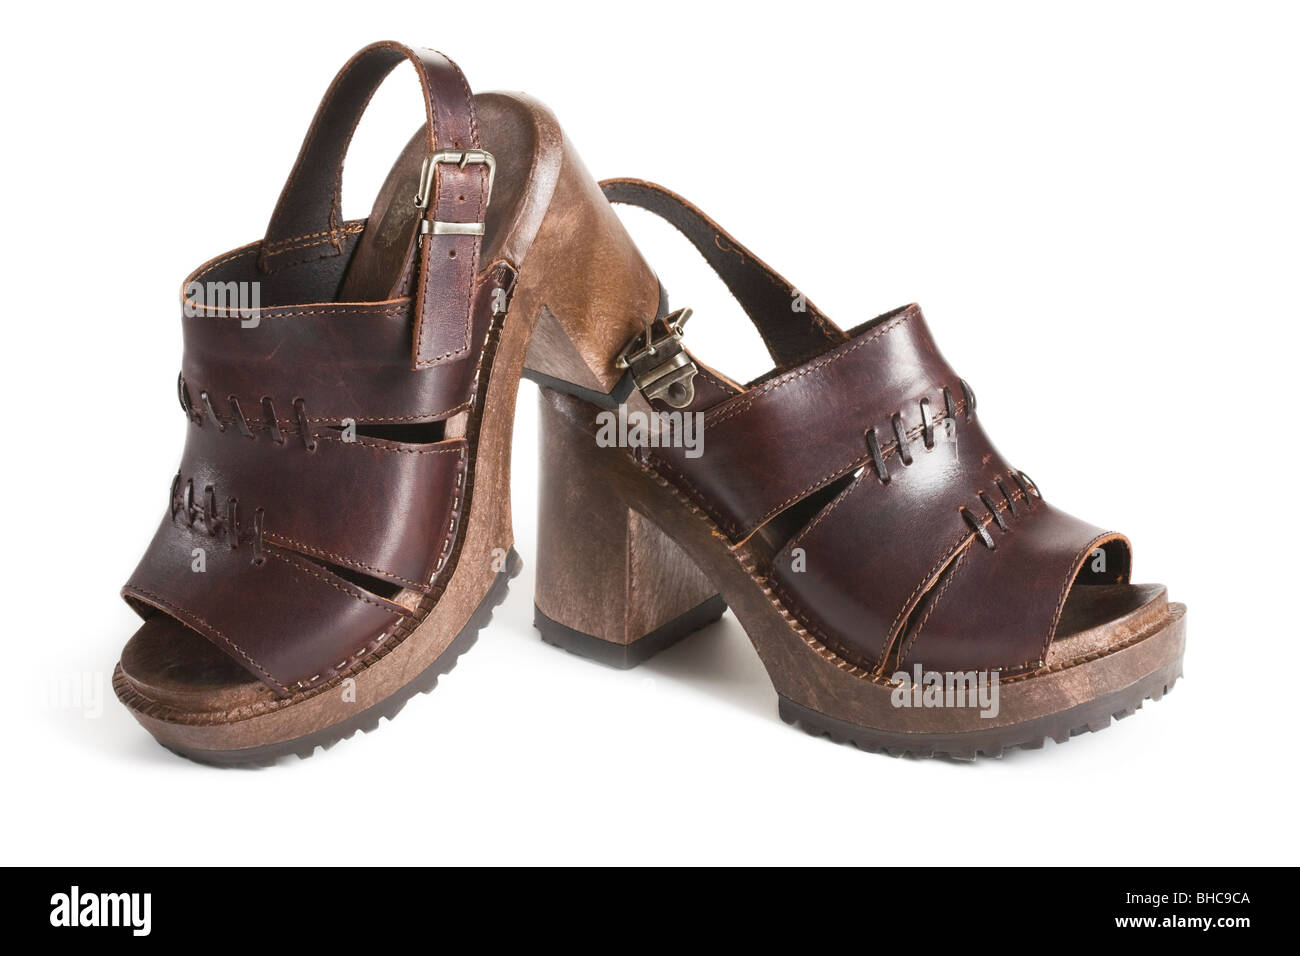 Share 146+ wooden sole sandals latest - vietkidsiq.edu.vn